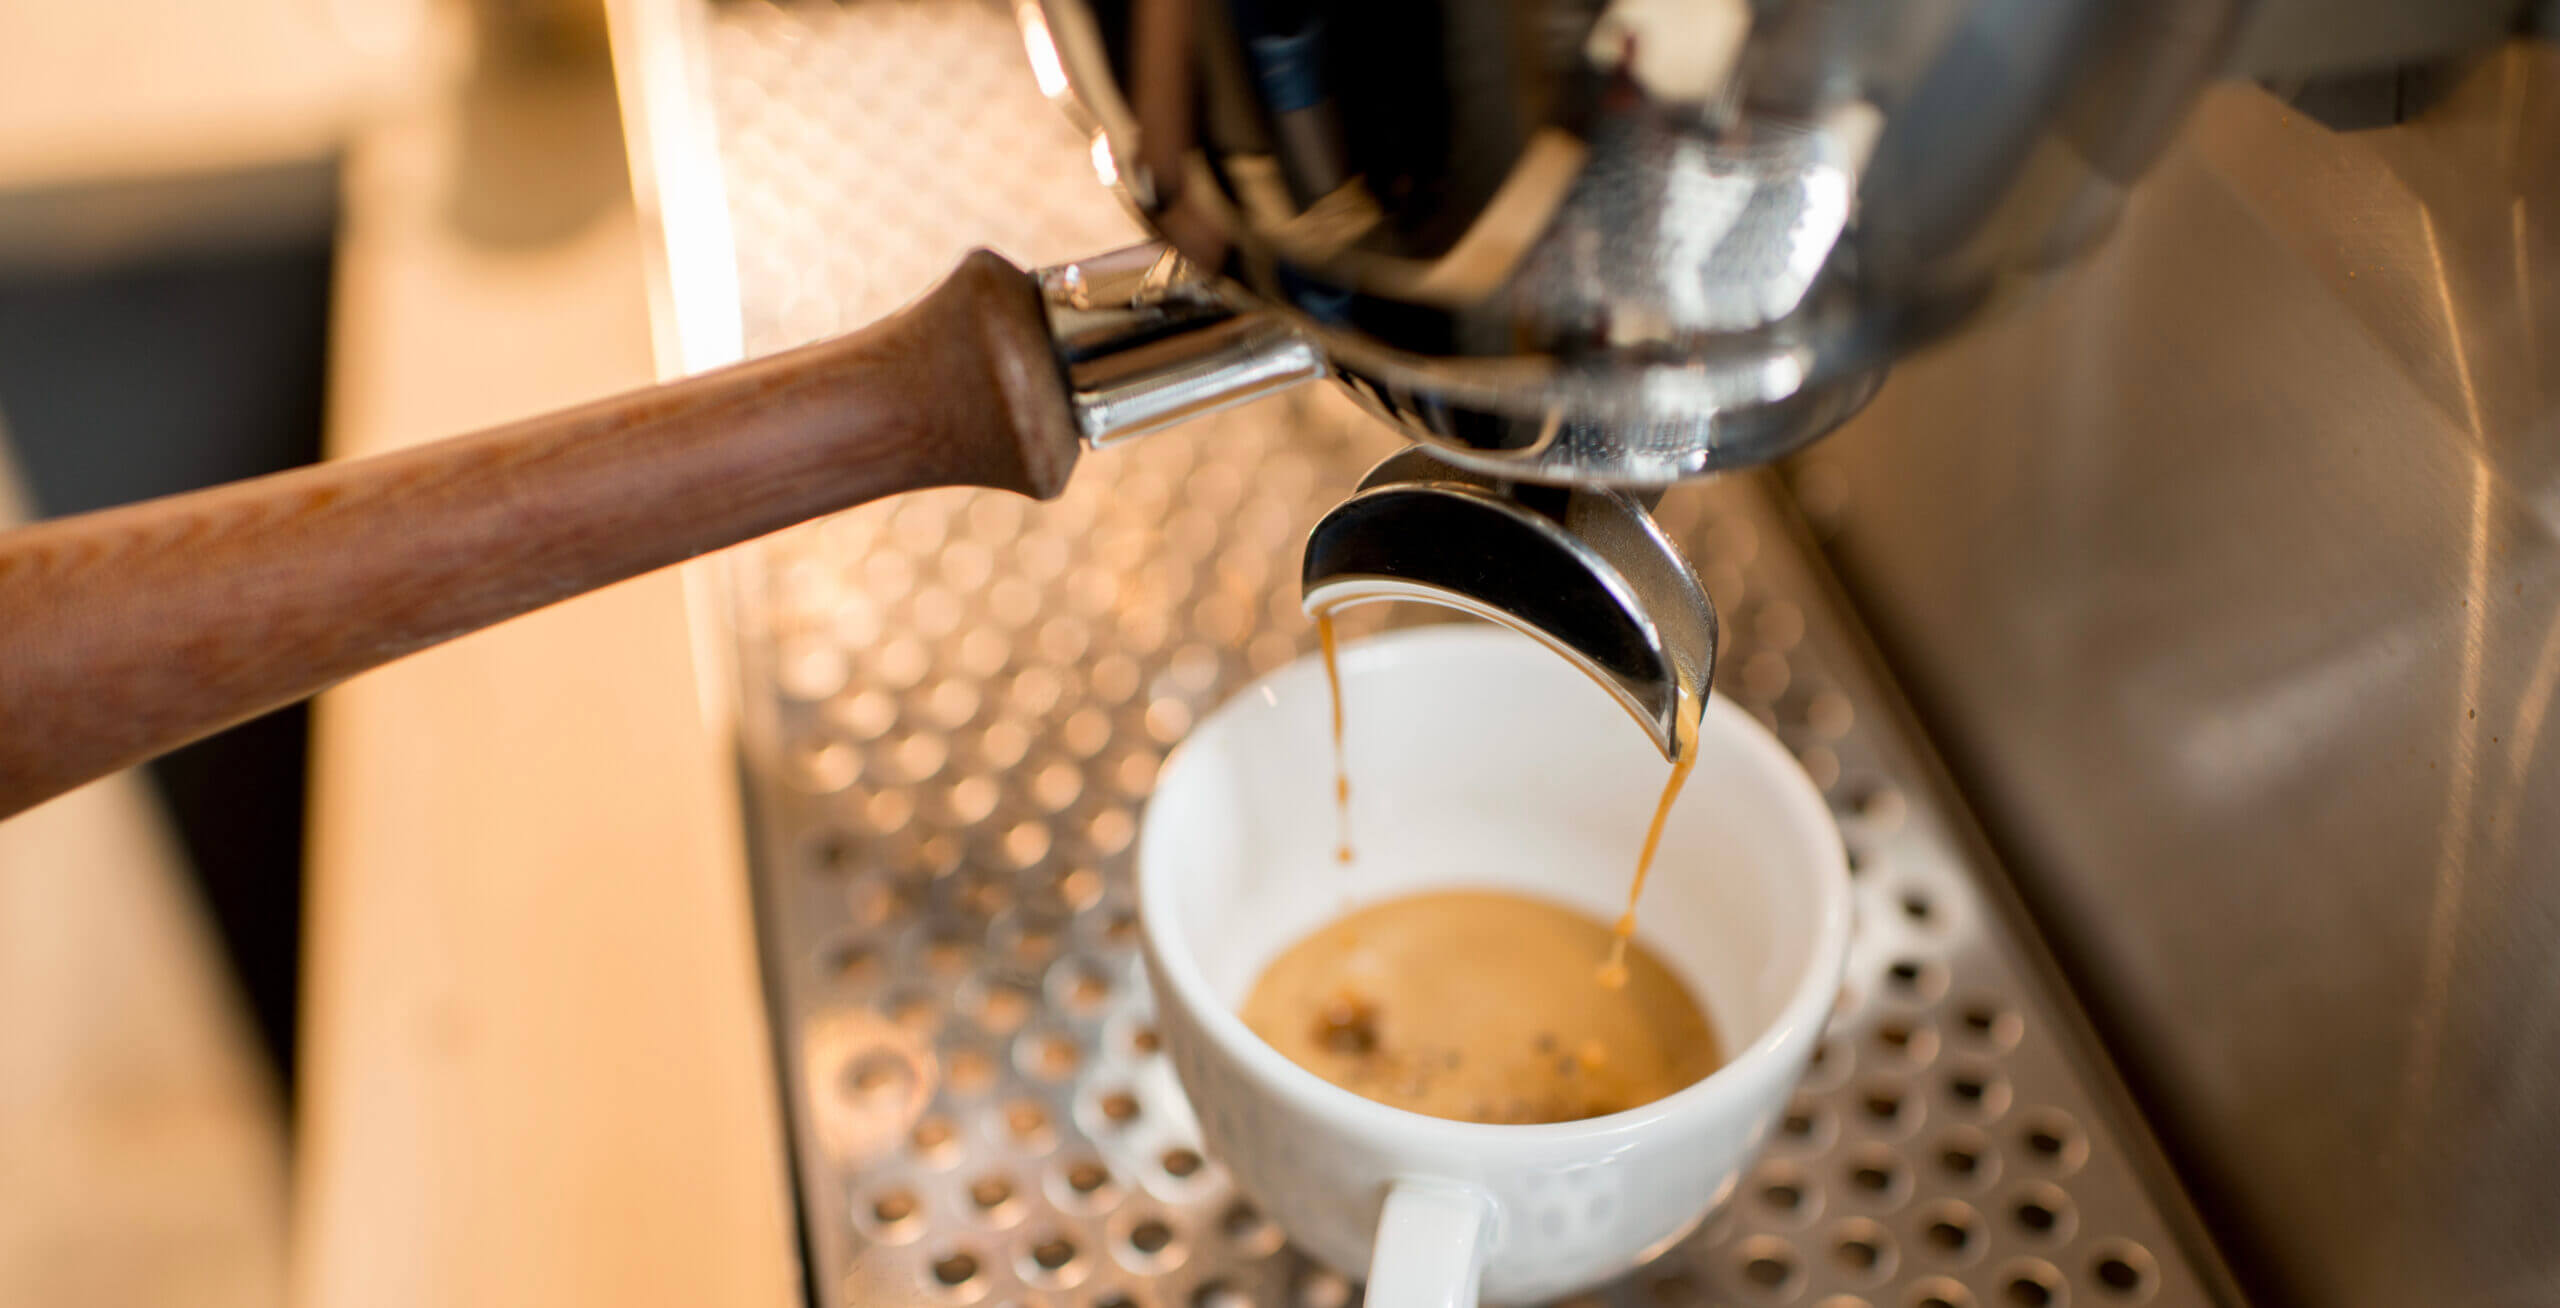 Zubereitung von Espresso-Kaffee